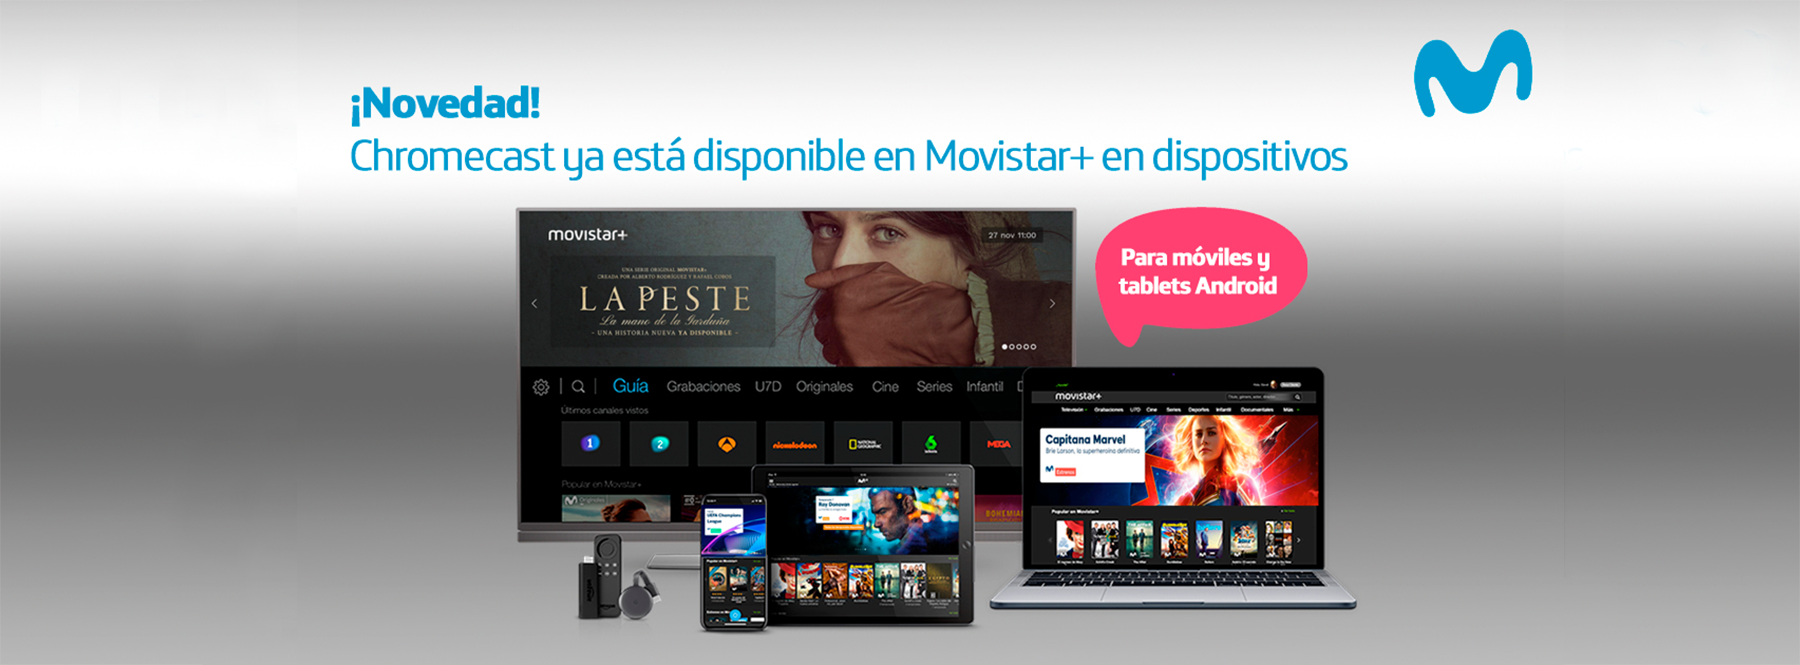 reunirse velocidad Instalaciones Descubre cómo ver películas y series de Movistar+ con Chromecast